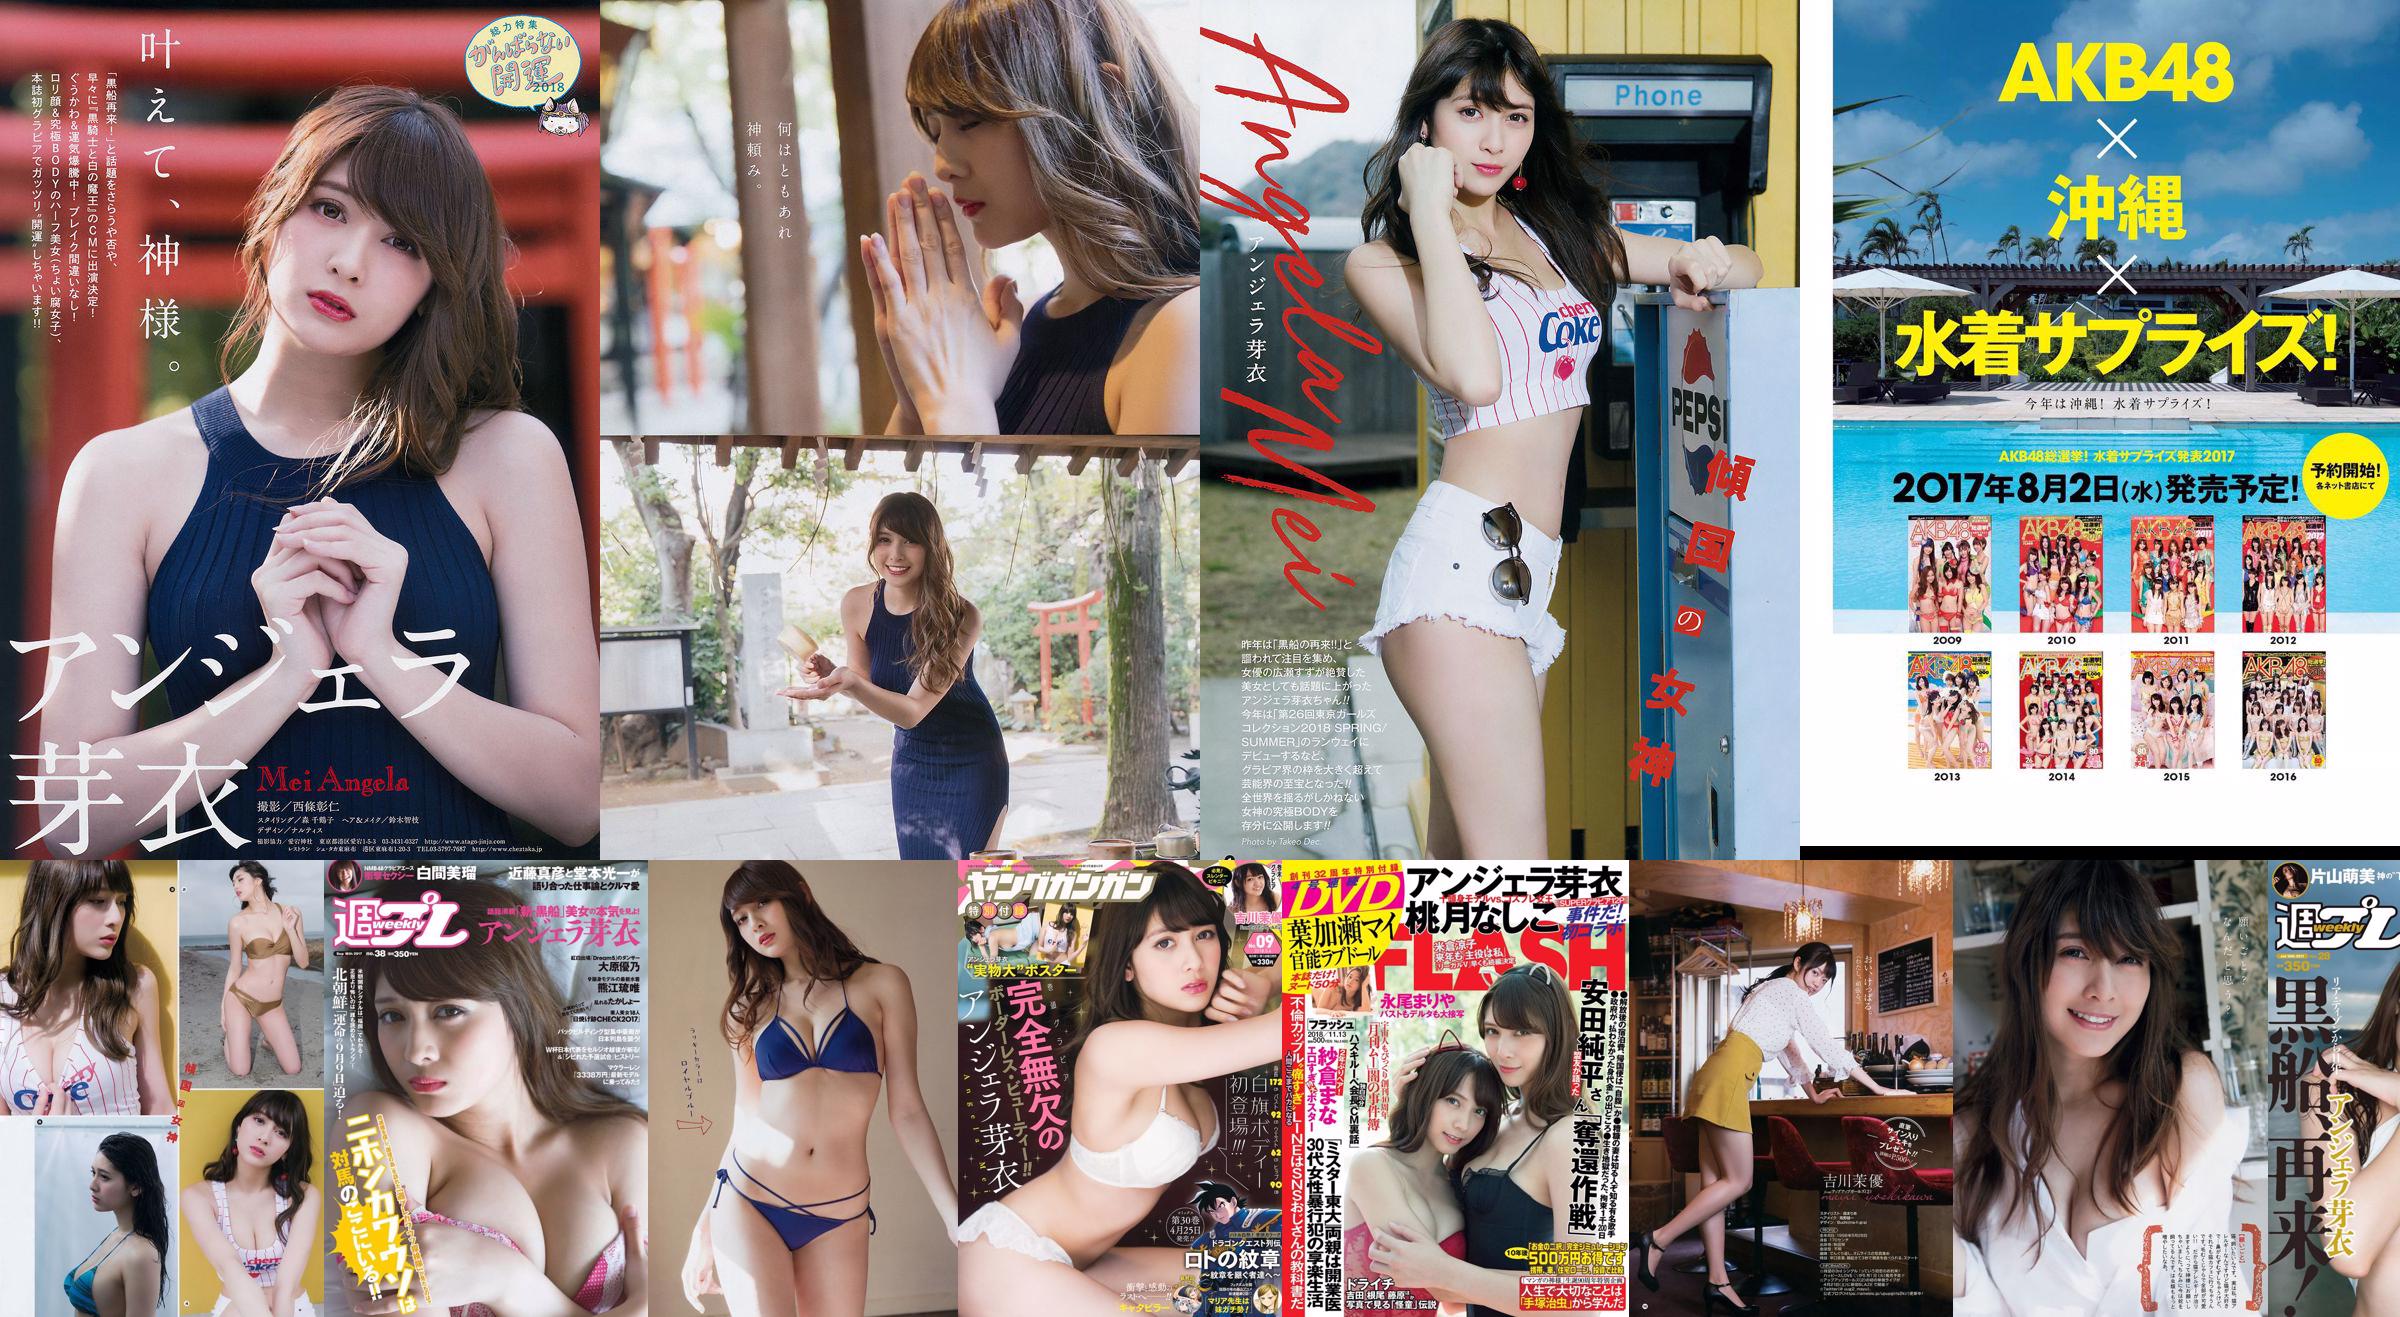 Angela Mei Riho Abiru Yuuna Suzuki Yuno Ohara Moemi Katayama Ito Ohno [Weekly Playboy] 2017 No.28 Photograph No.2216cd Page 2